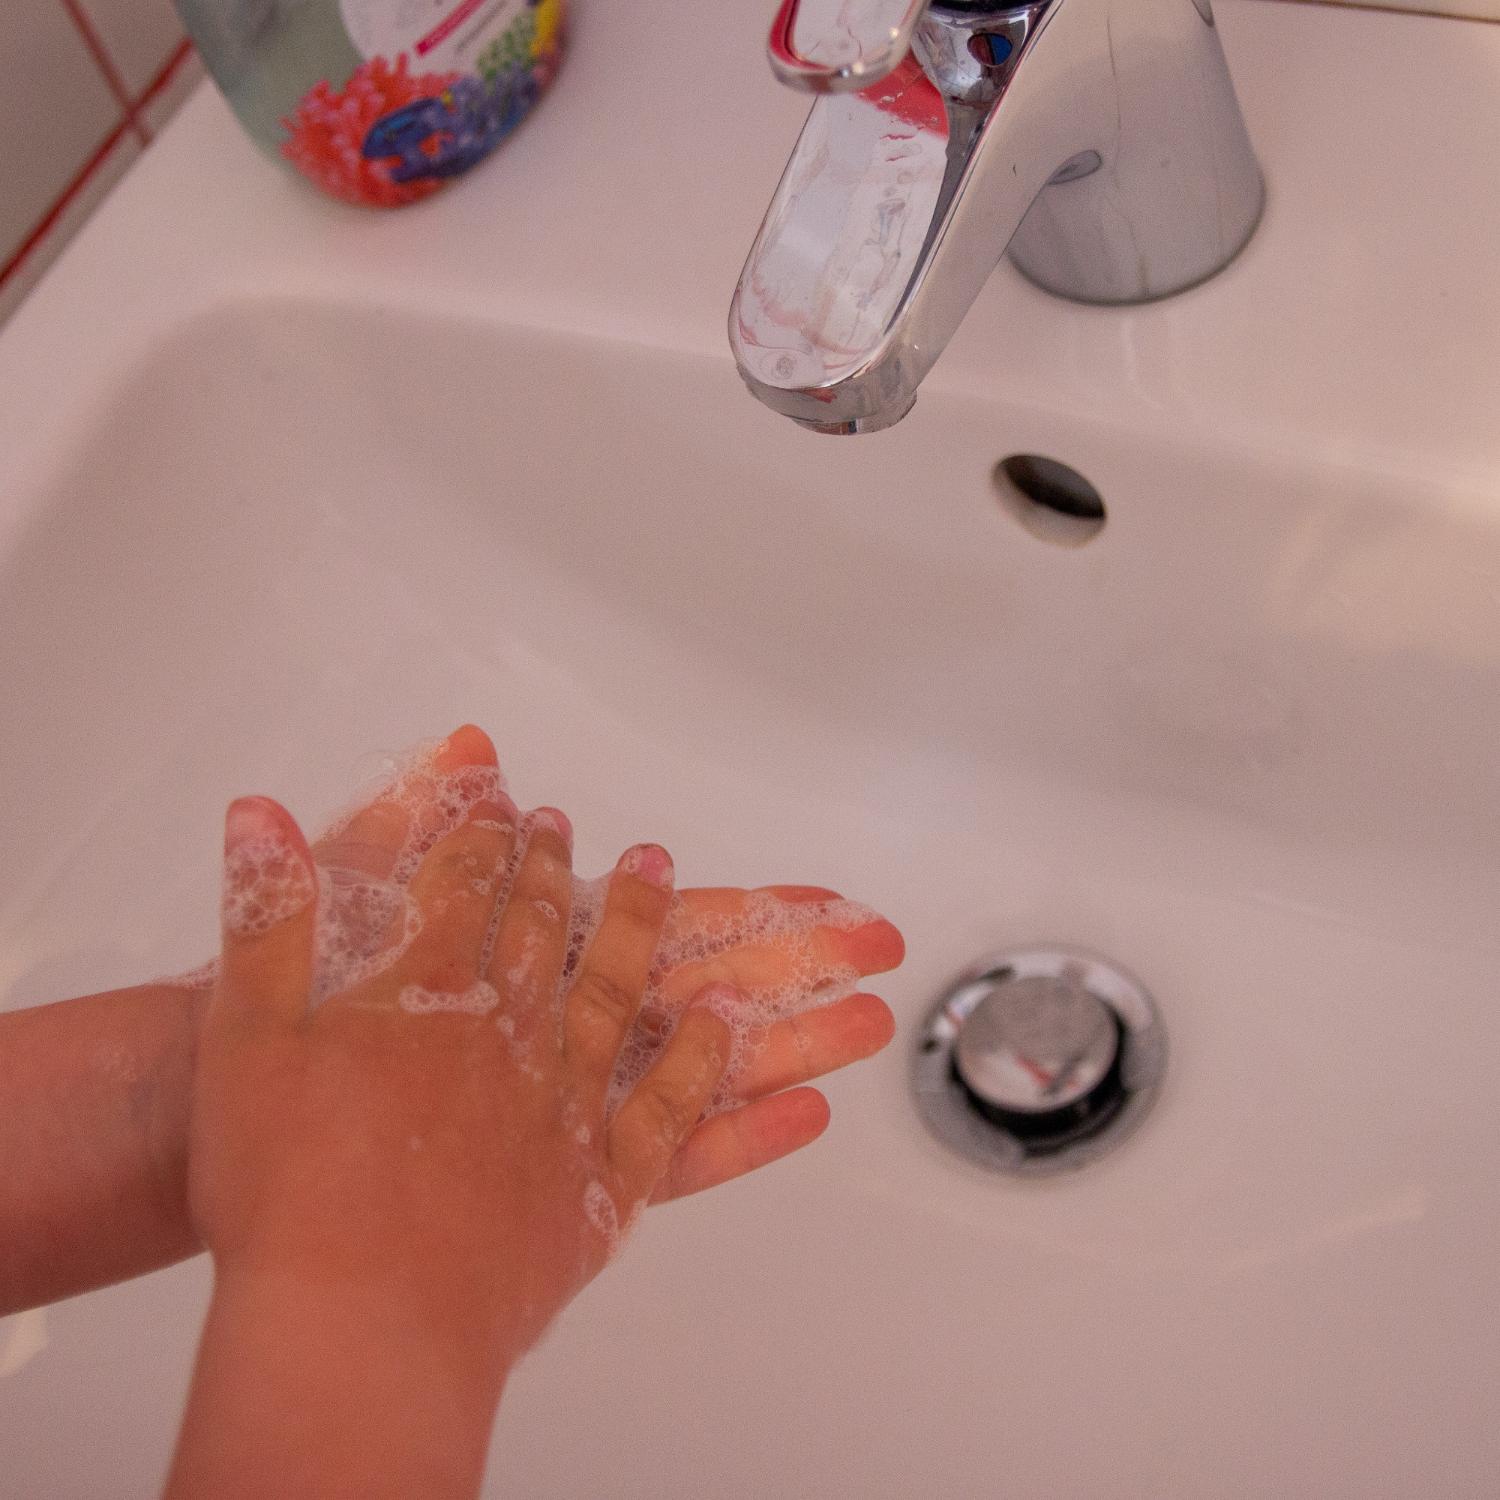 Tagesablauf Hände waschen